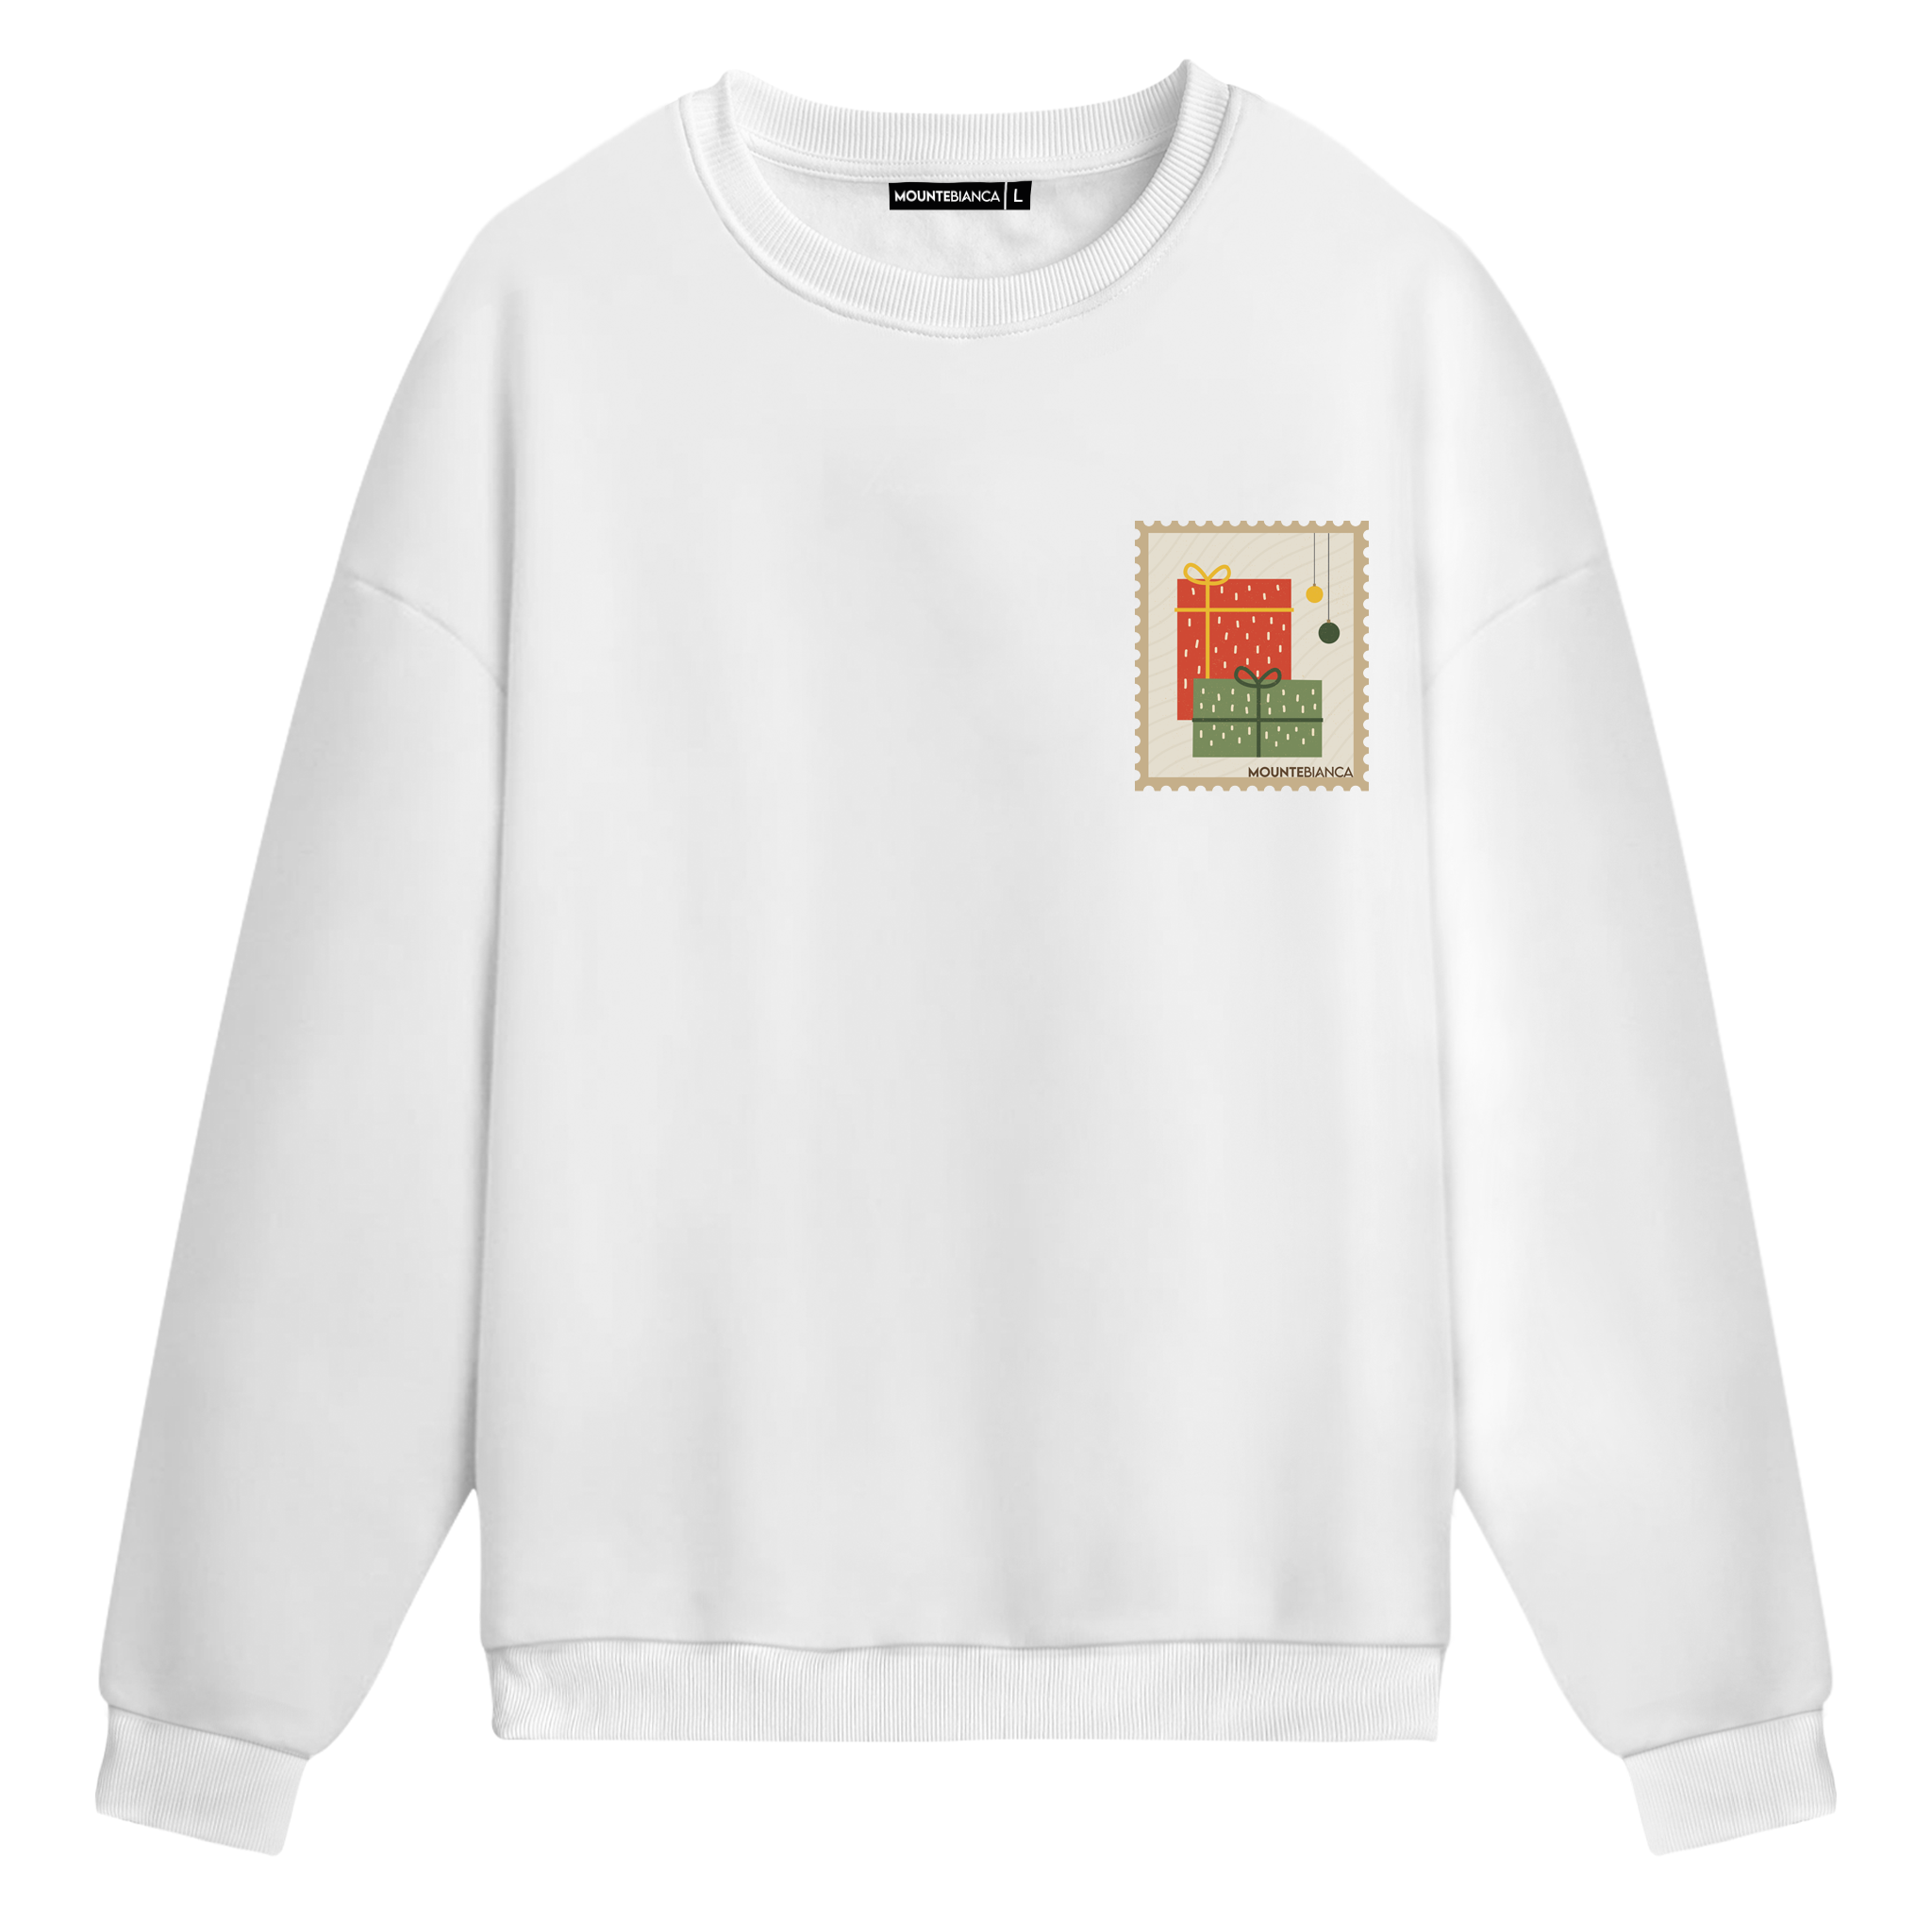 New Year Gift Pack - Sweatshirt